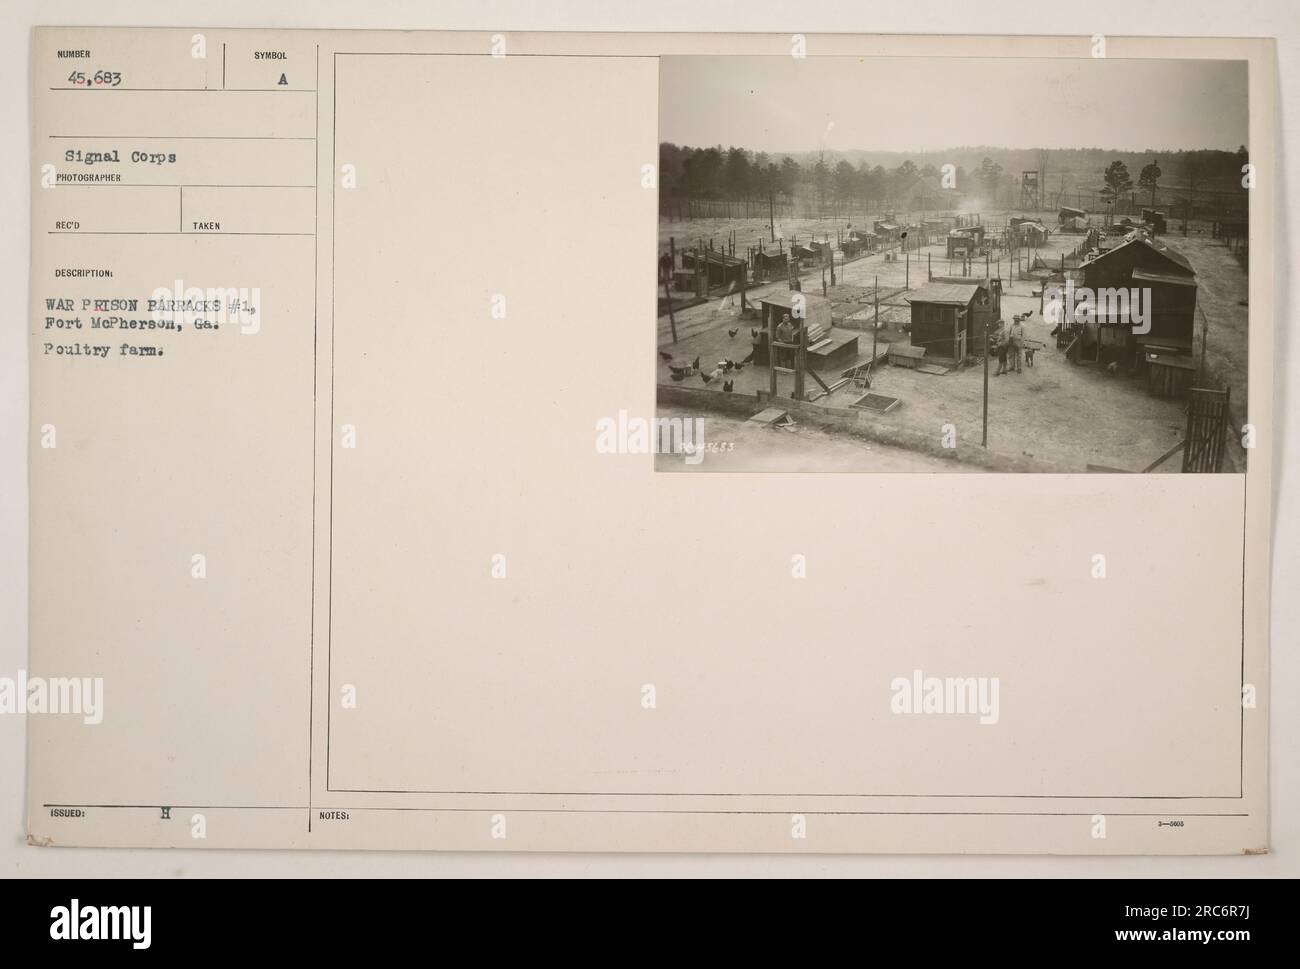 Das Bild zeigt eine Geflügelfarm in der war Prison Barracks #1 in Fort McPherson, Georgia während des 1. Weltkriegs. Der Betrieb scheint eine erhebliche Zahl von Geflügeltieren zu haben, was auf die Sommerzählung von 45.683 hindeutet. Das Foto wurde von einem Fotografen des Signalkorps aufgenommen und seine Beschreibung deutet darauf hin, dass es als Teil einer Kriegsdokumentation herausgegeben wurde. Stockfoto